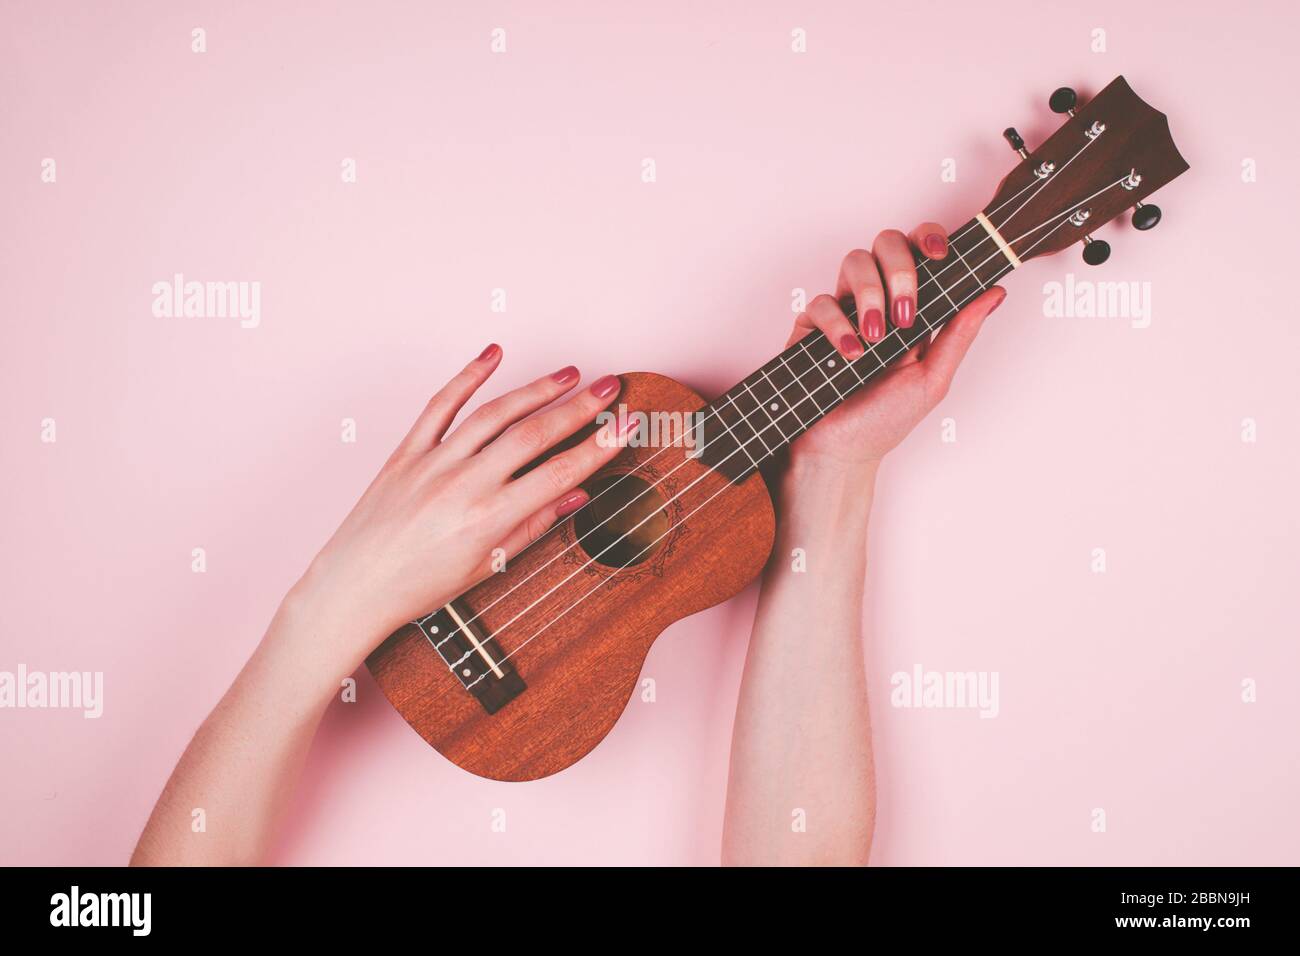 Frau Hände mit pinkfarbener Maniküre, die wenig Wodden Ukulele auf pinkfarbenem Hintergrund hält. Feines Musikerbild. Stockfoto